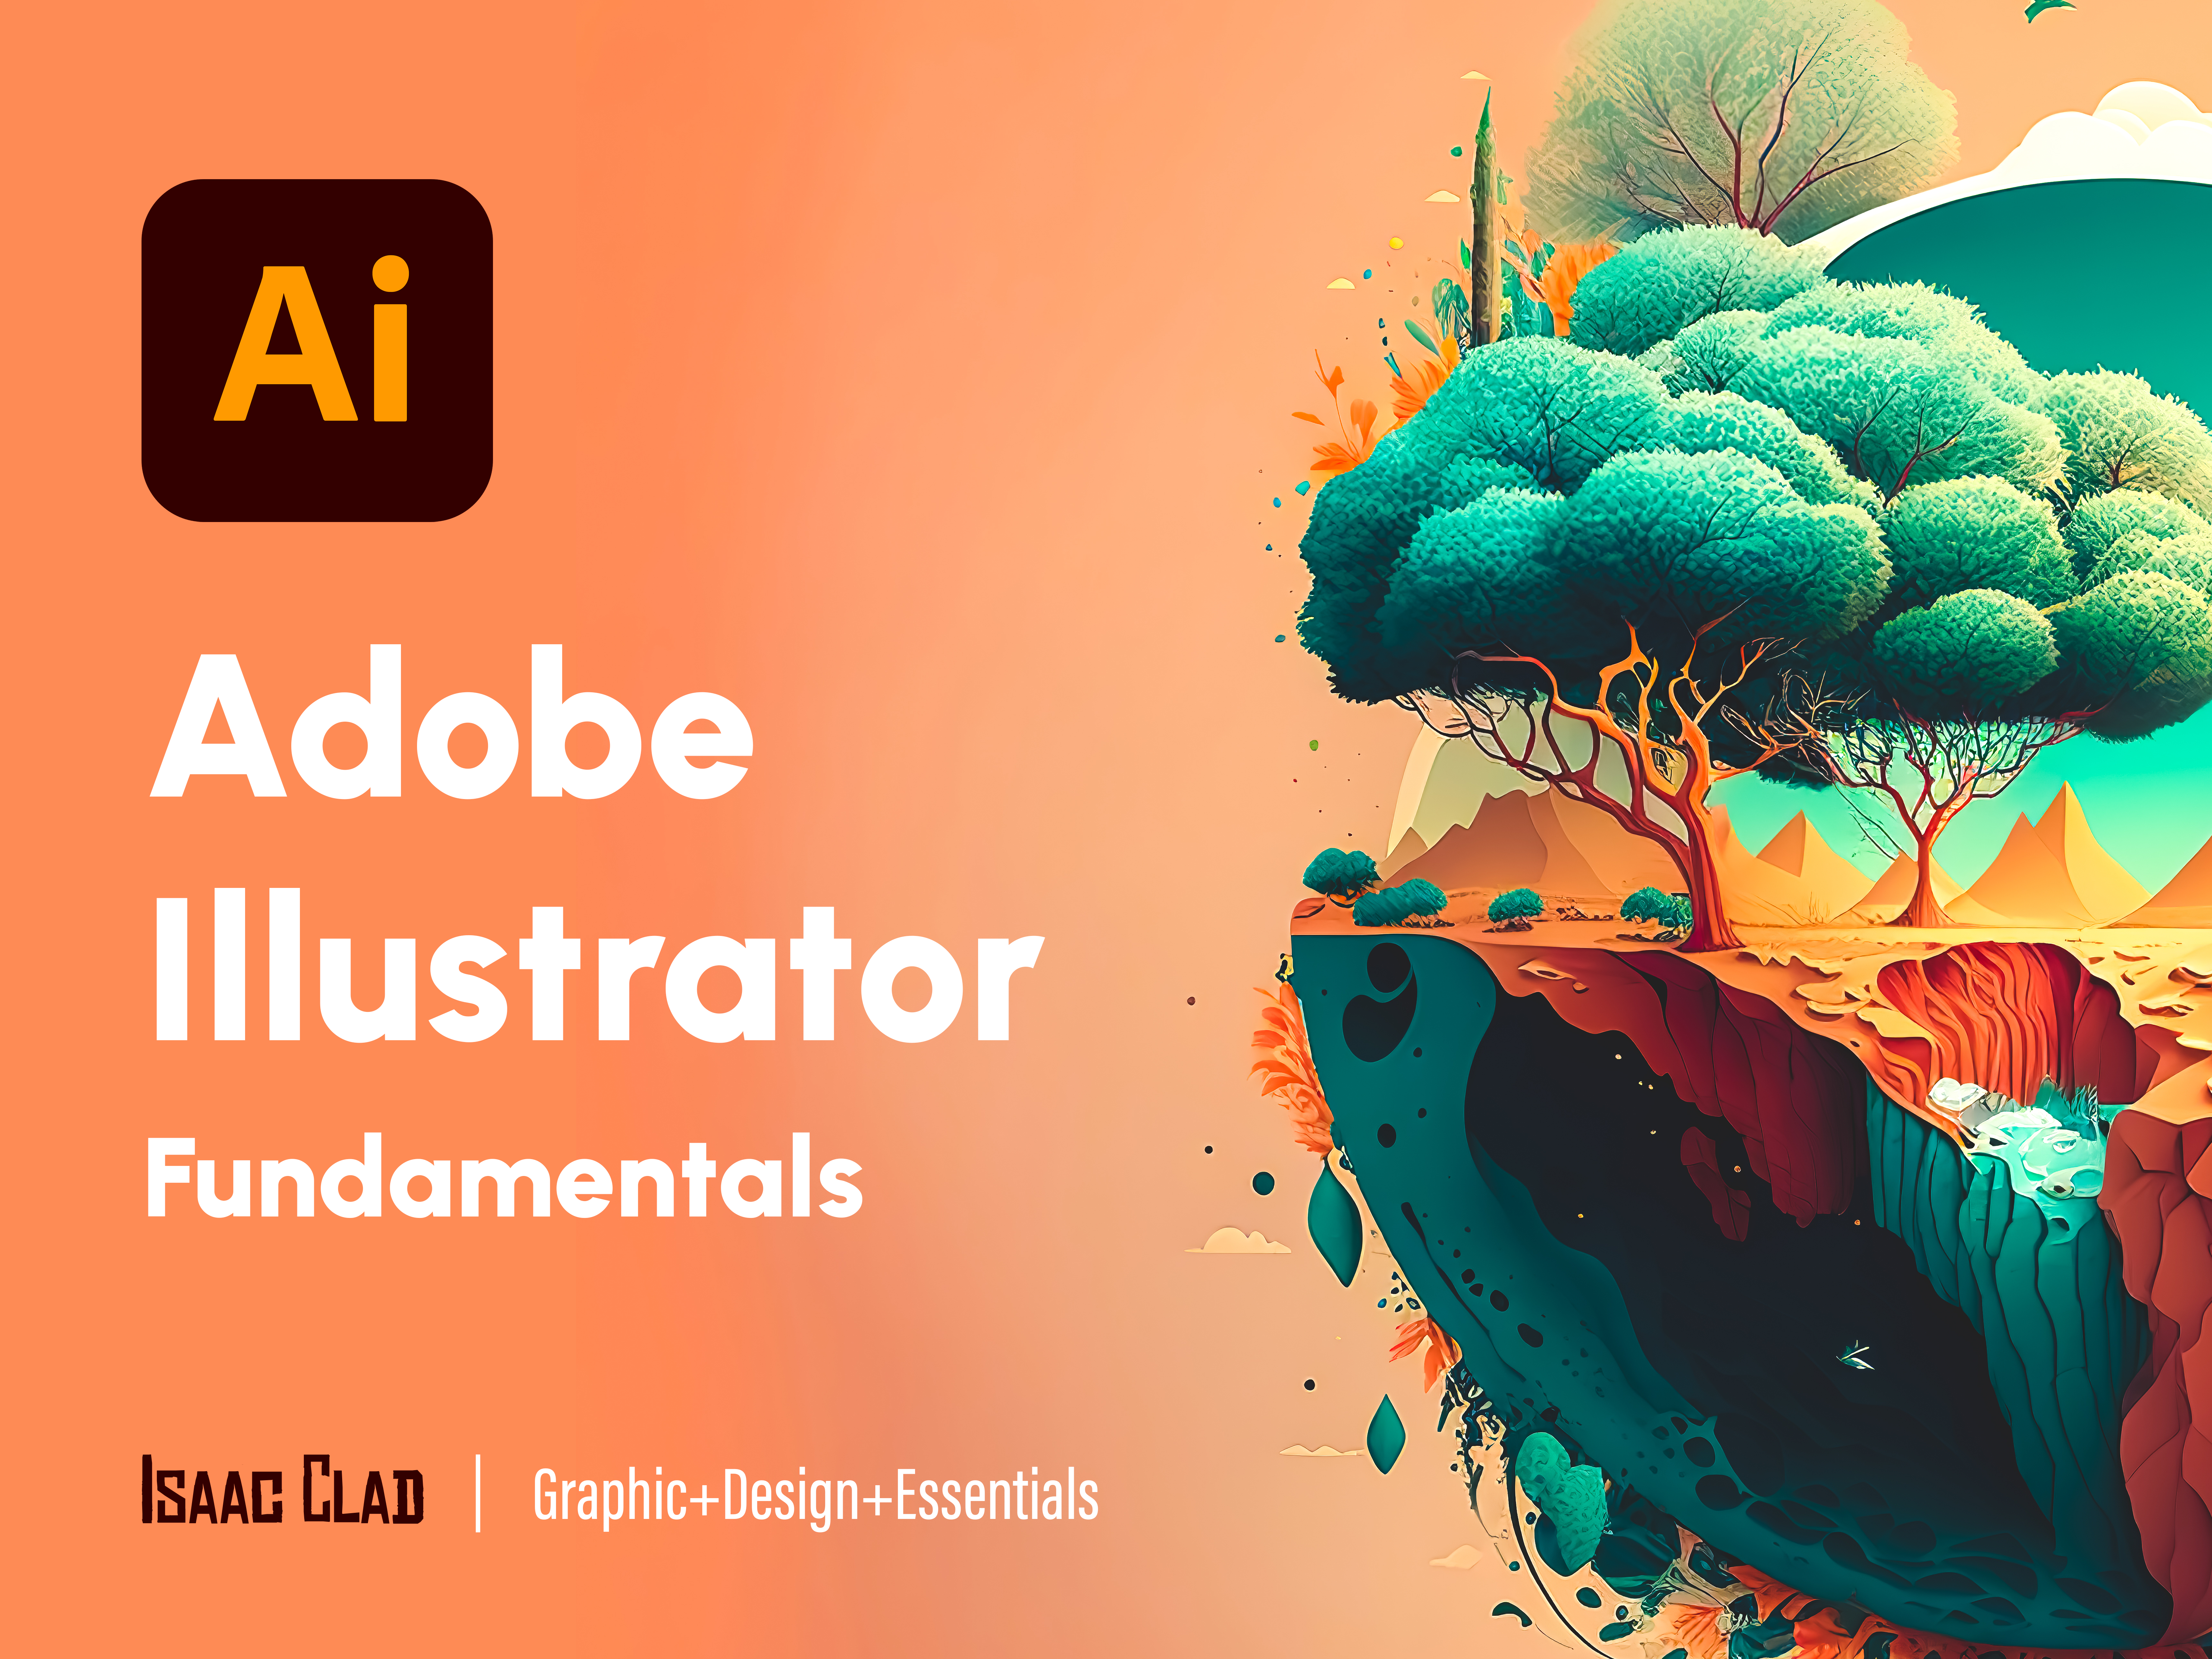 Adobe Illustrator Fundamentals